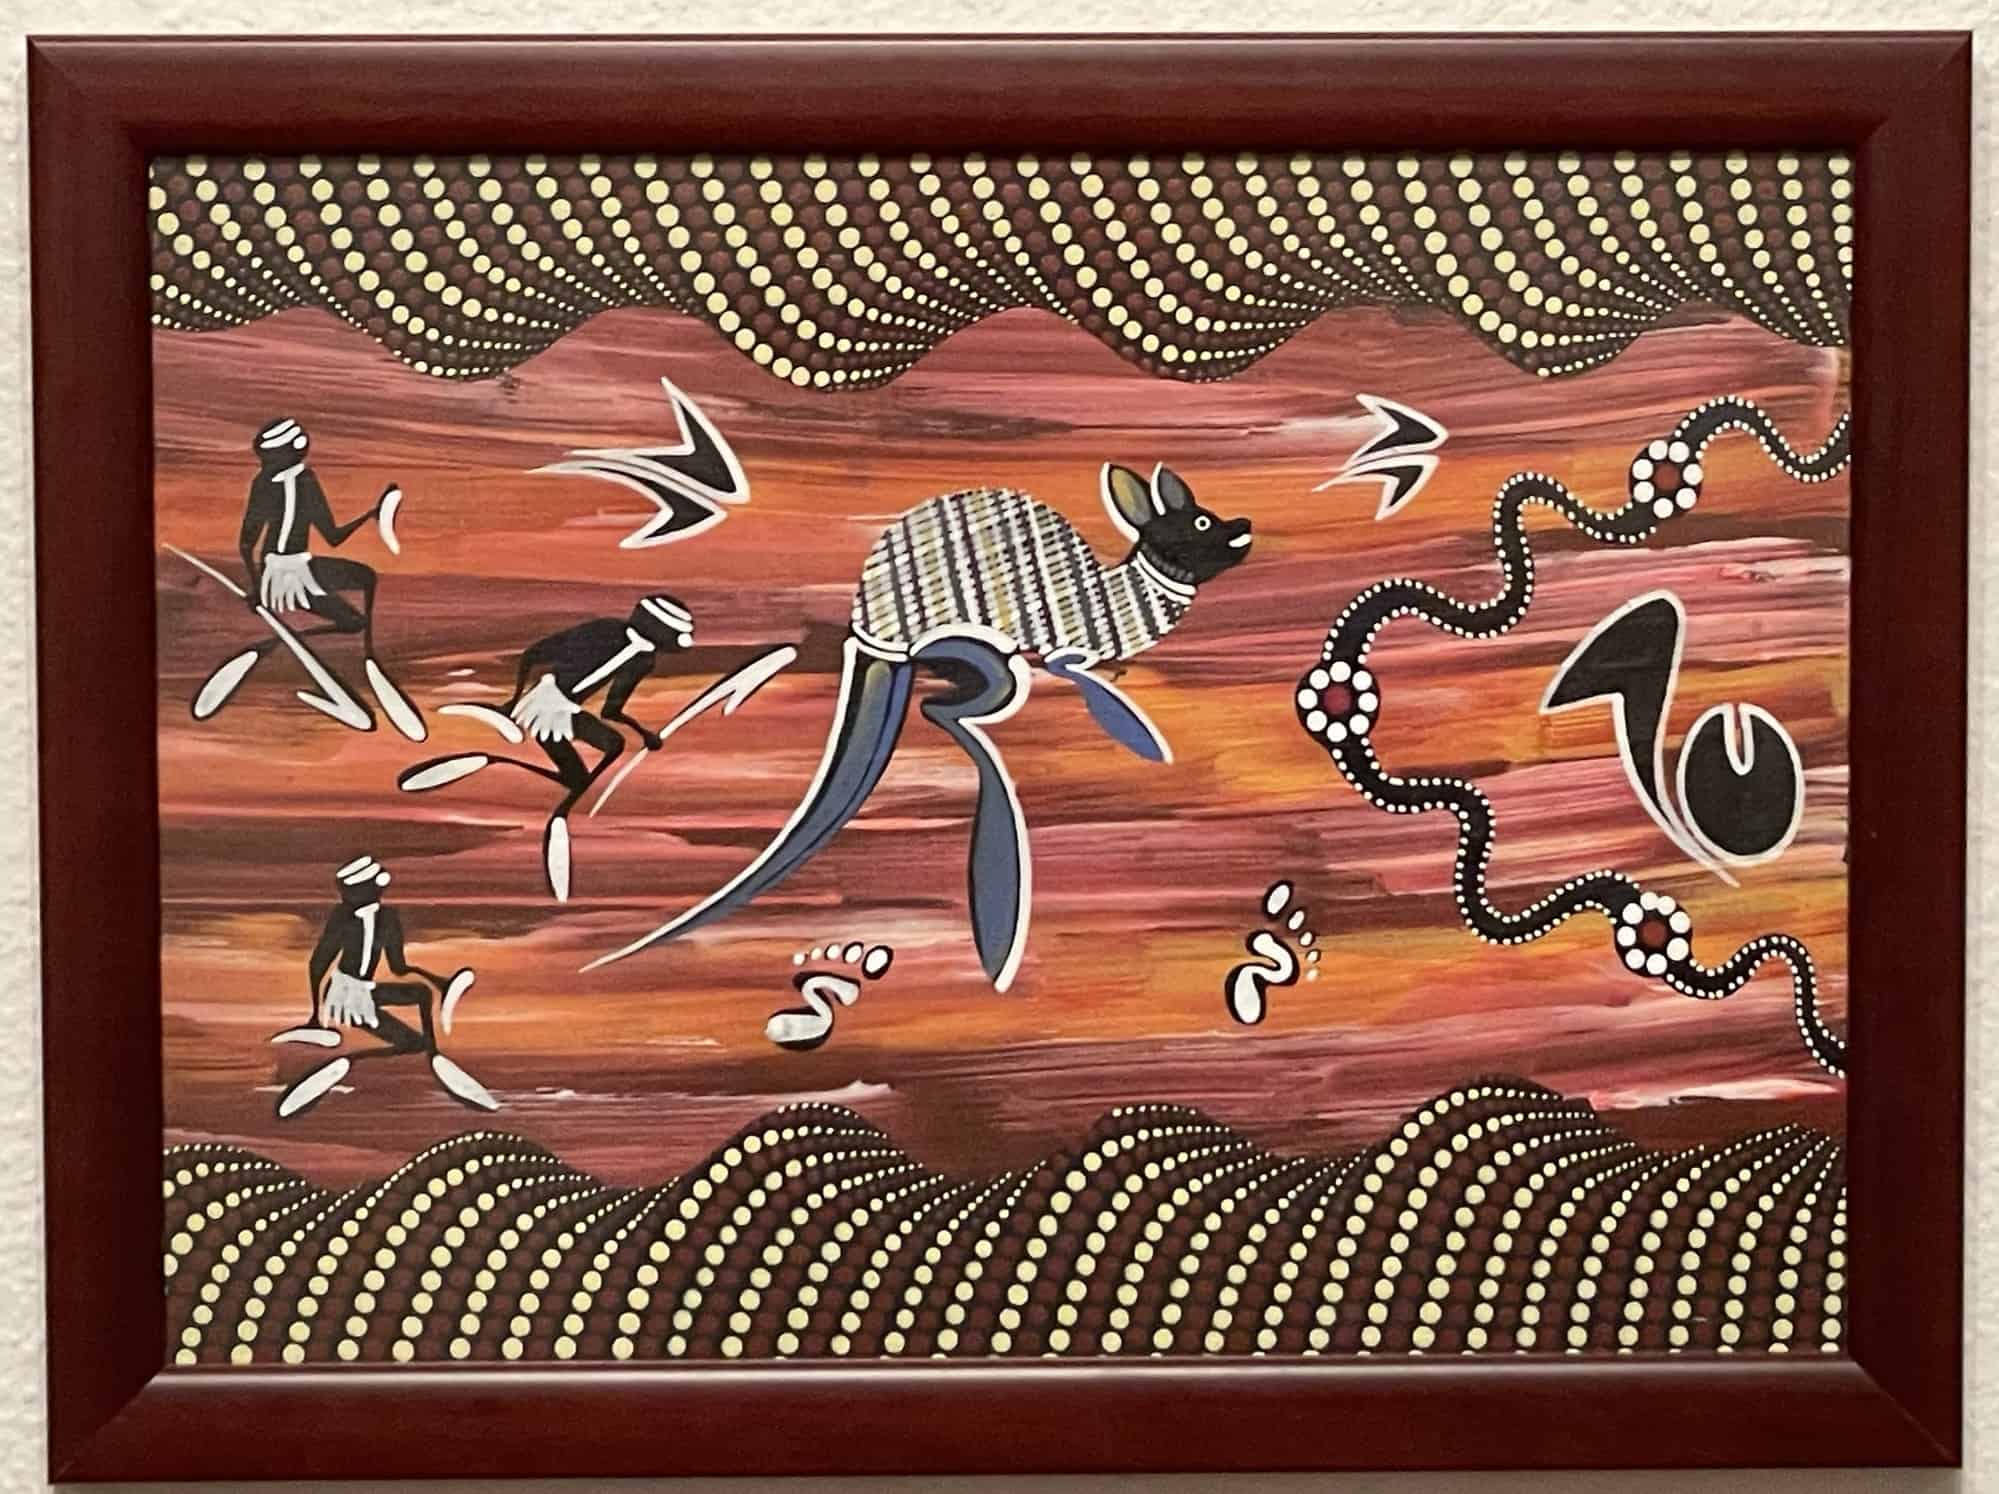 Aborigines-Bild mit Känguru in der Mitte und Ureinwohnern und weiteren Dingen